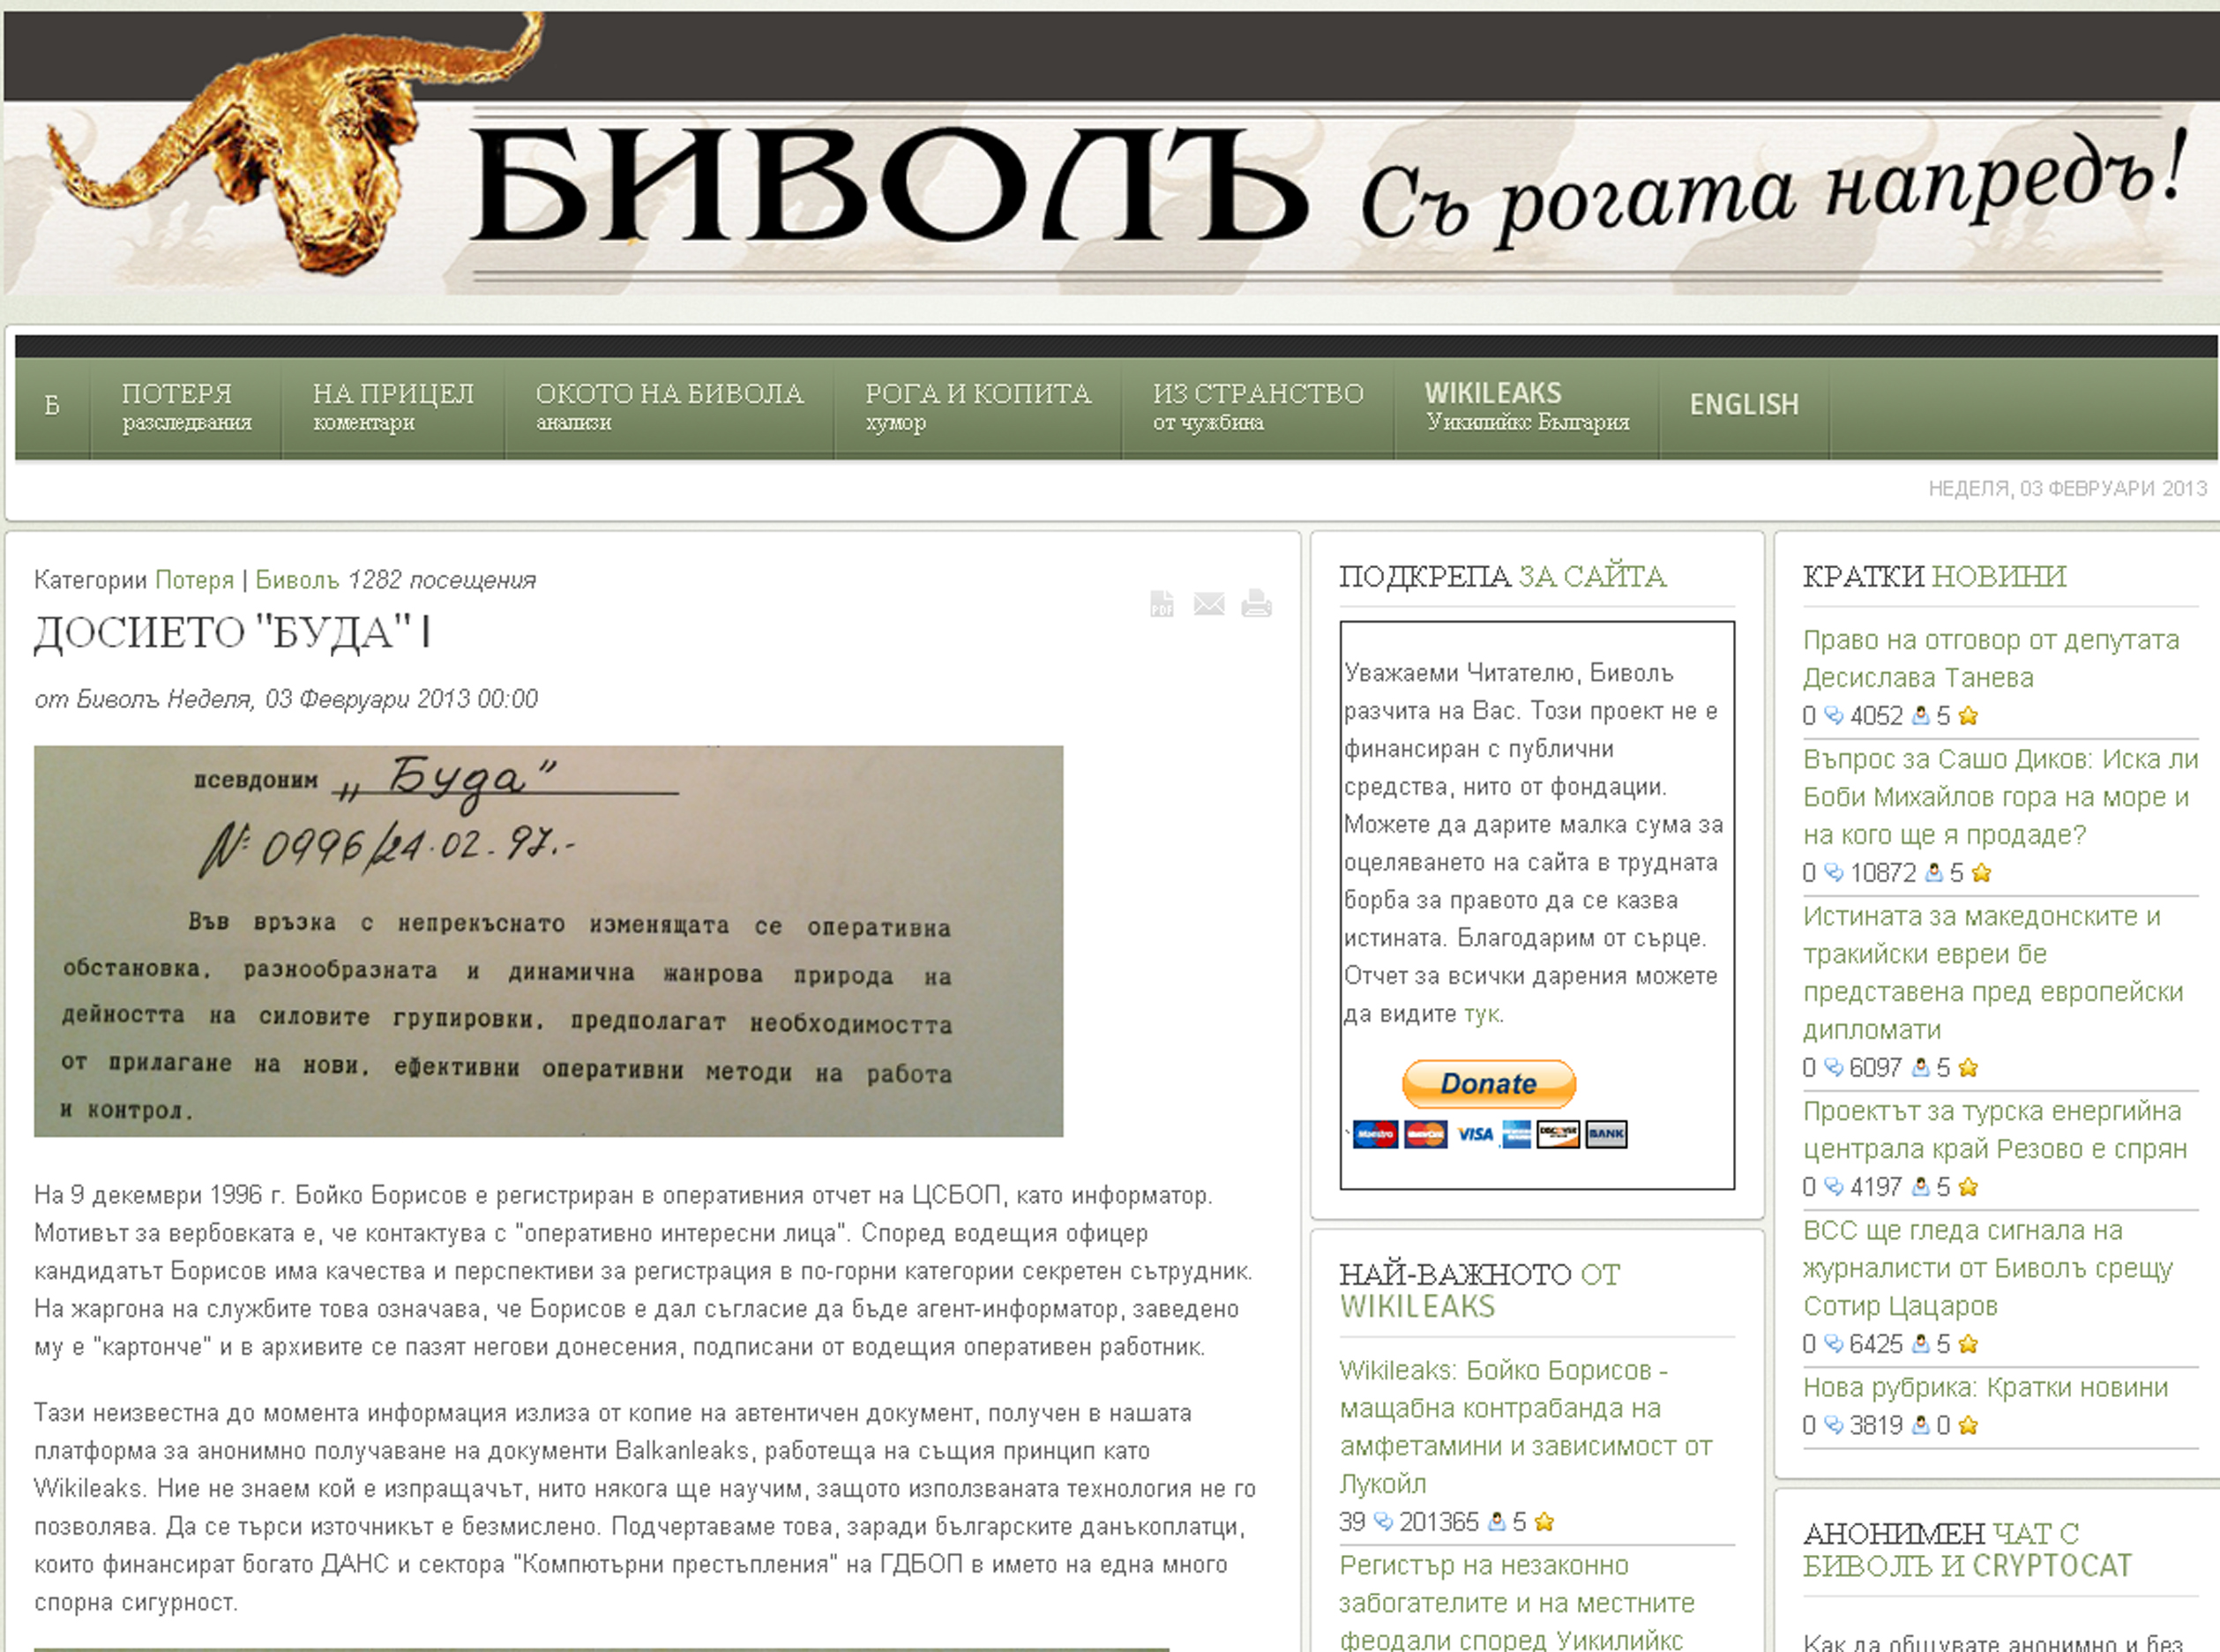 ”Биволъ“ съобщава, че документът е получен в платформата на сайта за анонимно получаване на документи Balkanleaks